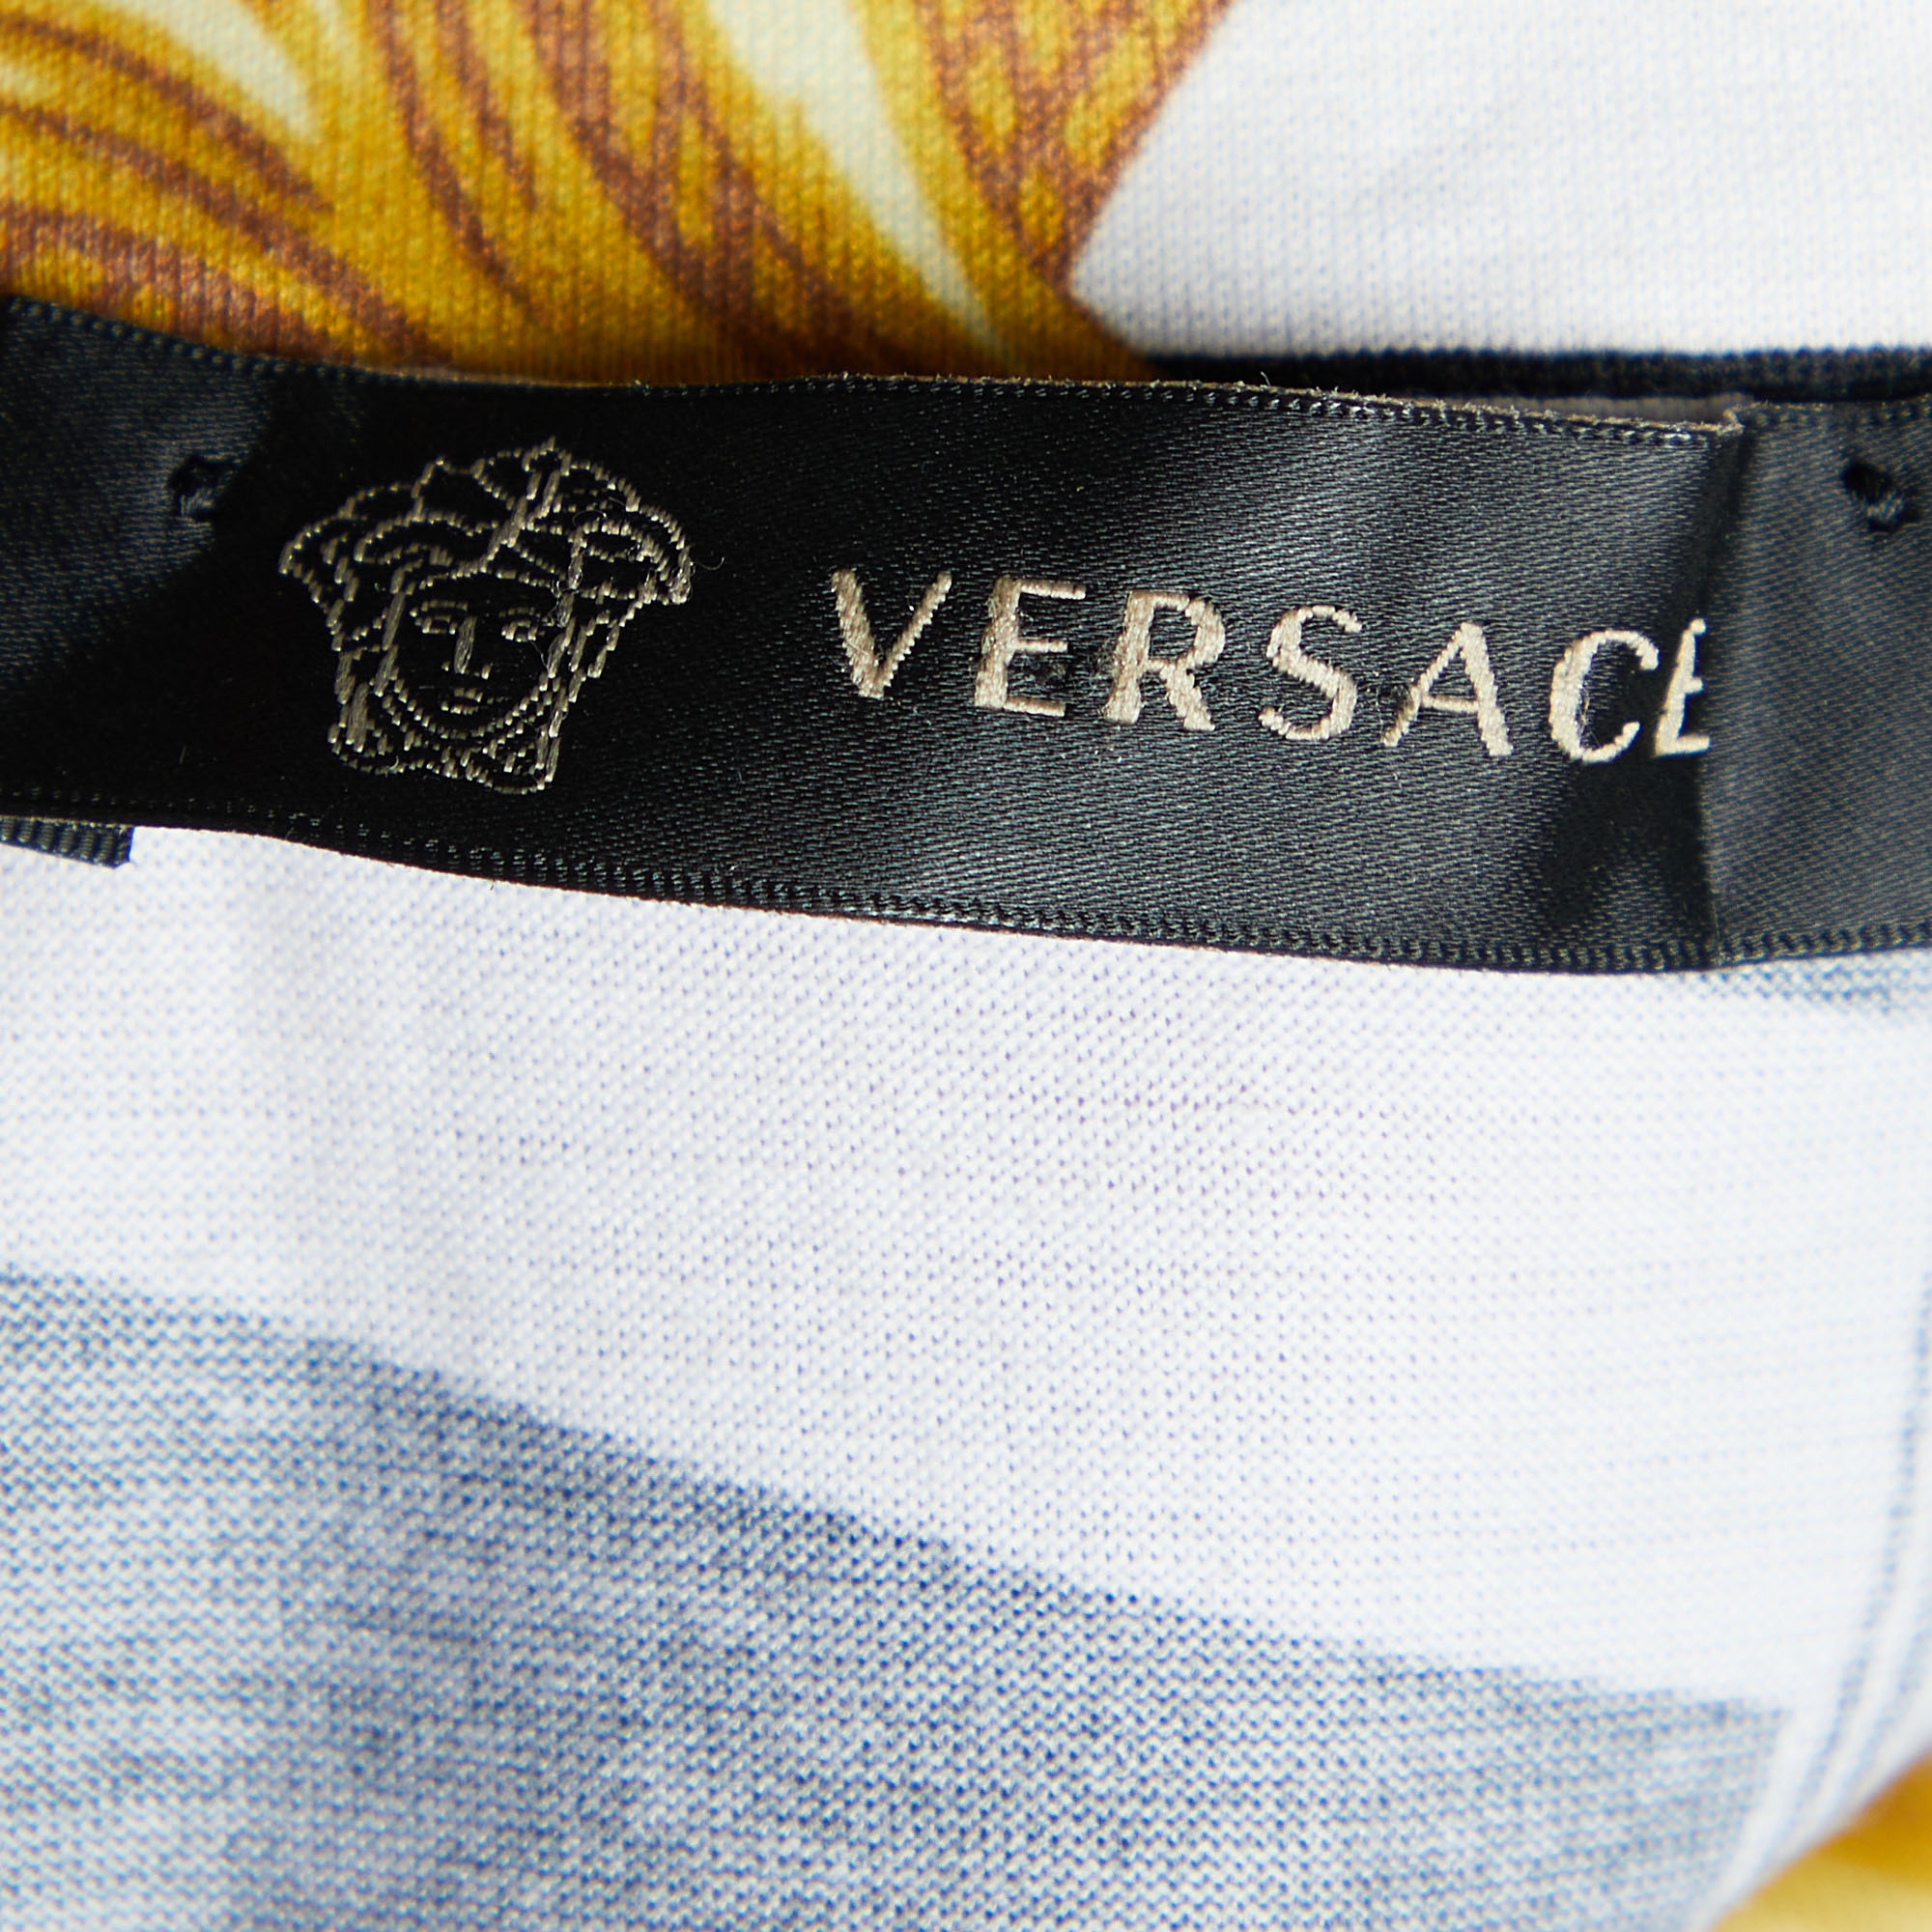 Versace Monochrome Baroque Printed Cotton Knit Crewneck T-Shirt M